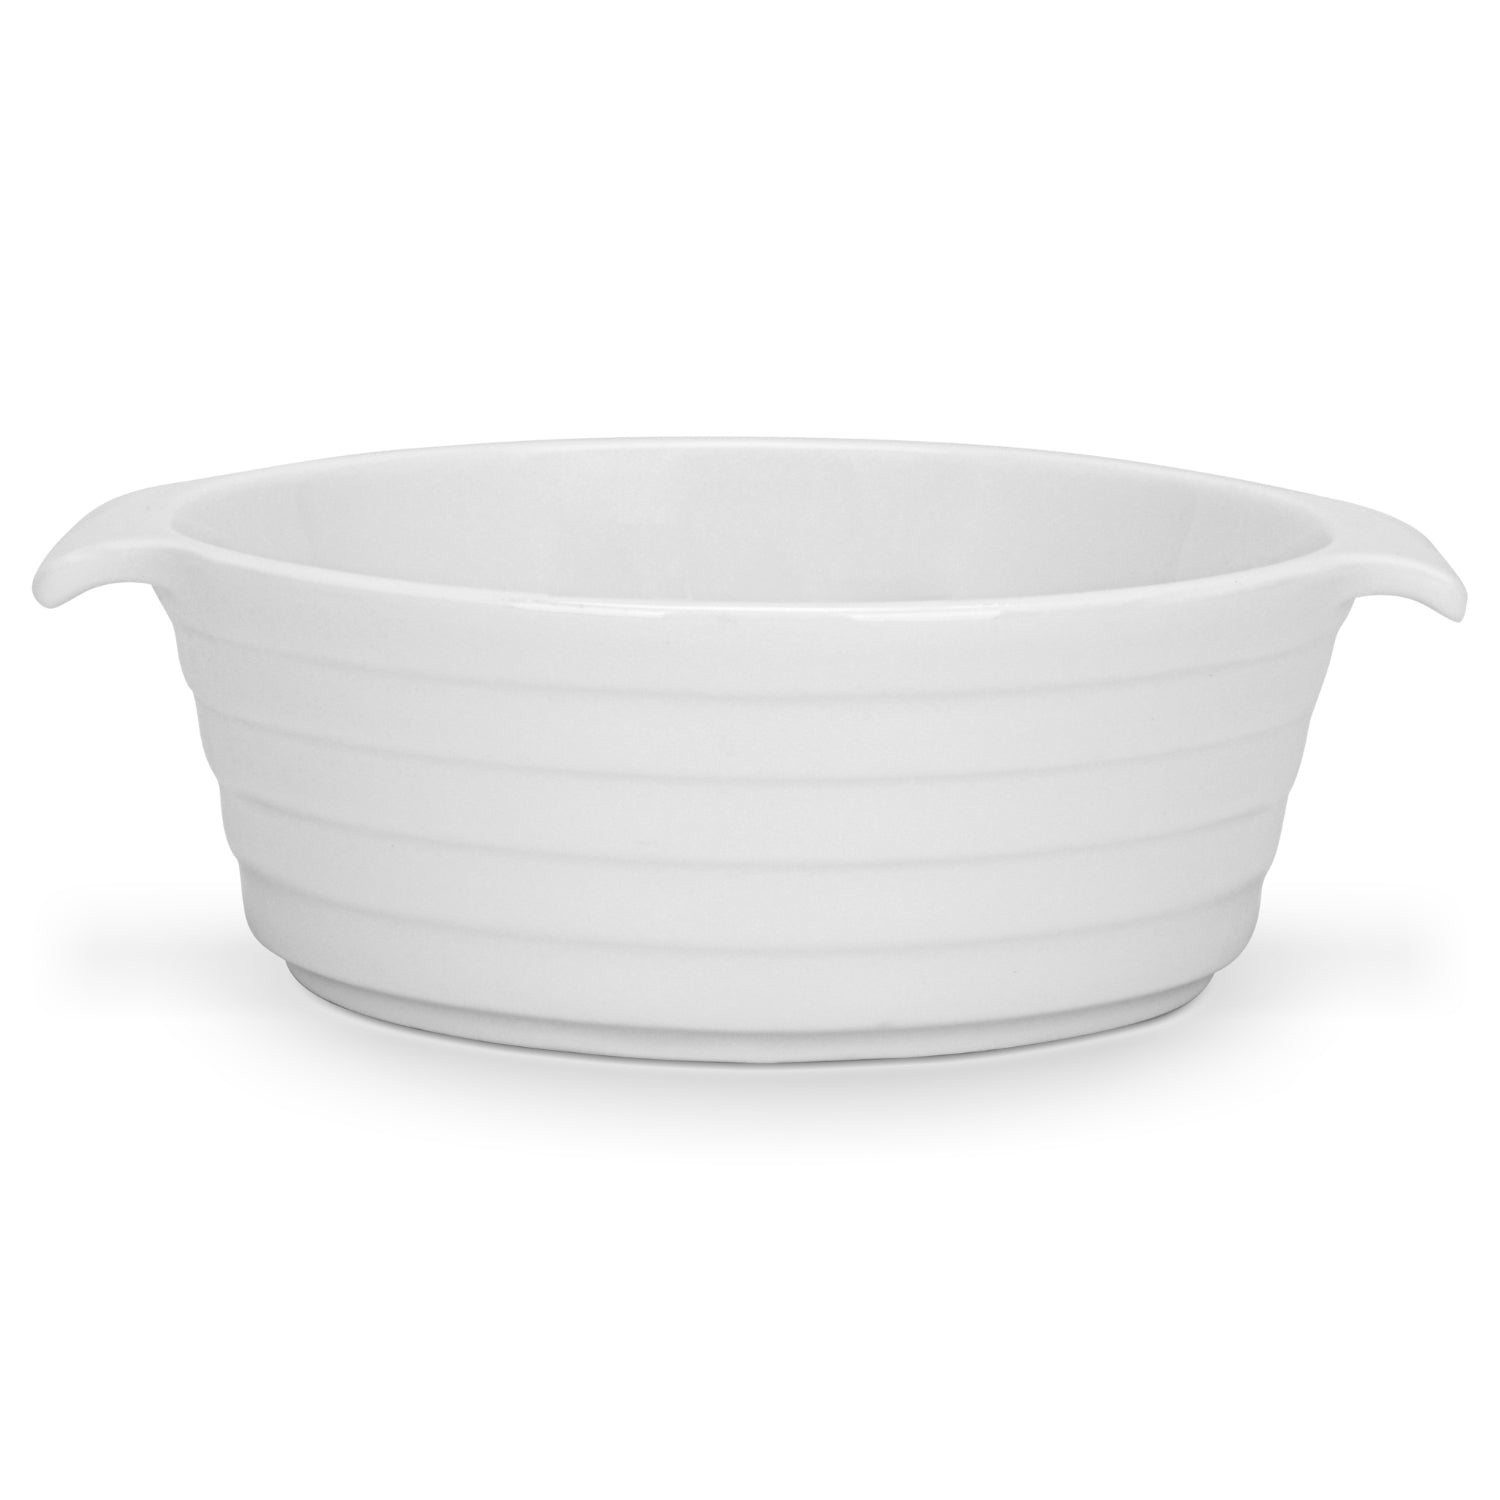 Fissman 3 Piece Round Baking Dish 12x4.5cm/220ml Porcelain